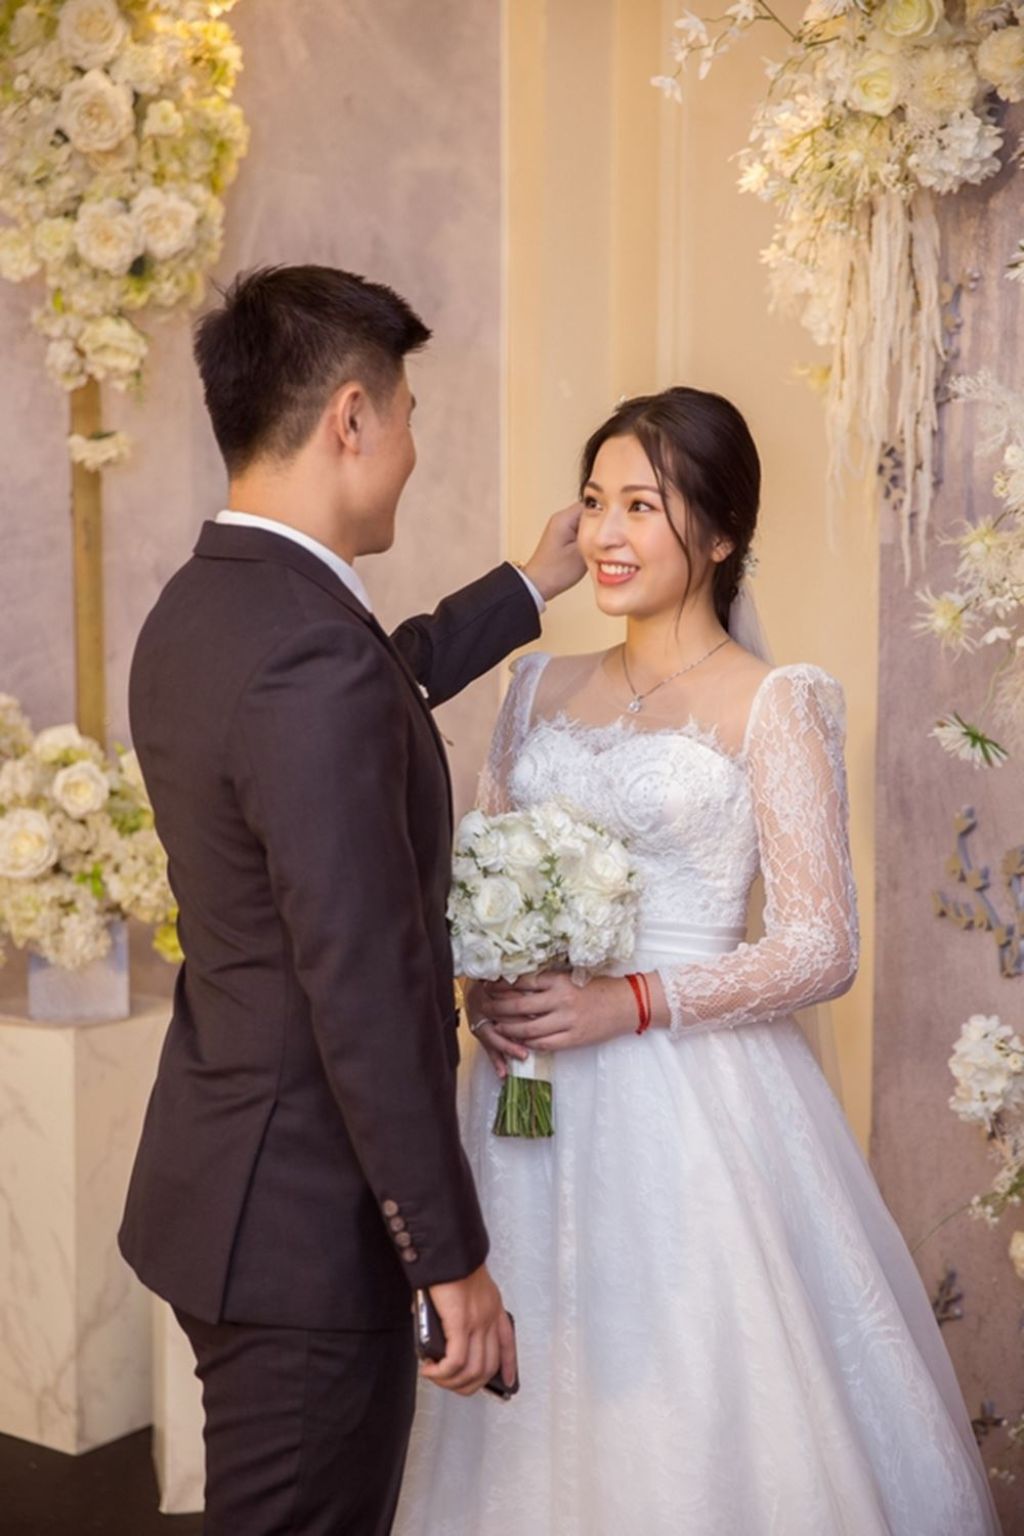 Studio HongKong Wedding Đà Nẵng – Ảnh viện chụp ảnh cưới hỏi nổi tiếng ở Đà Nẵng